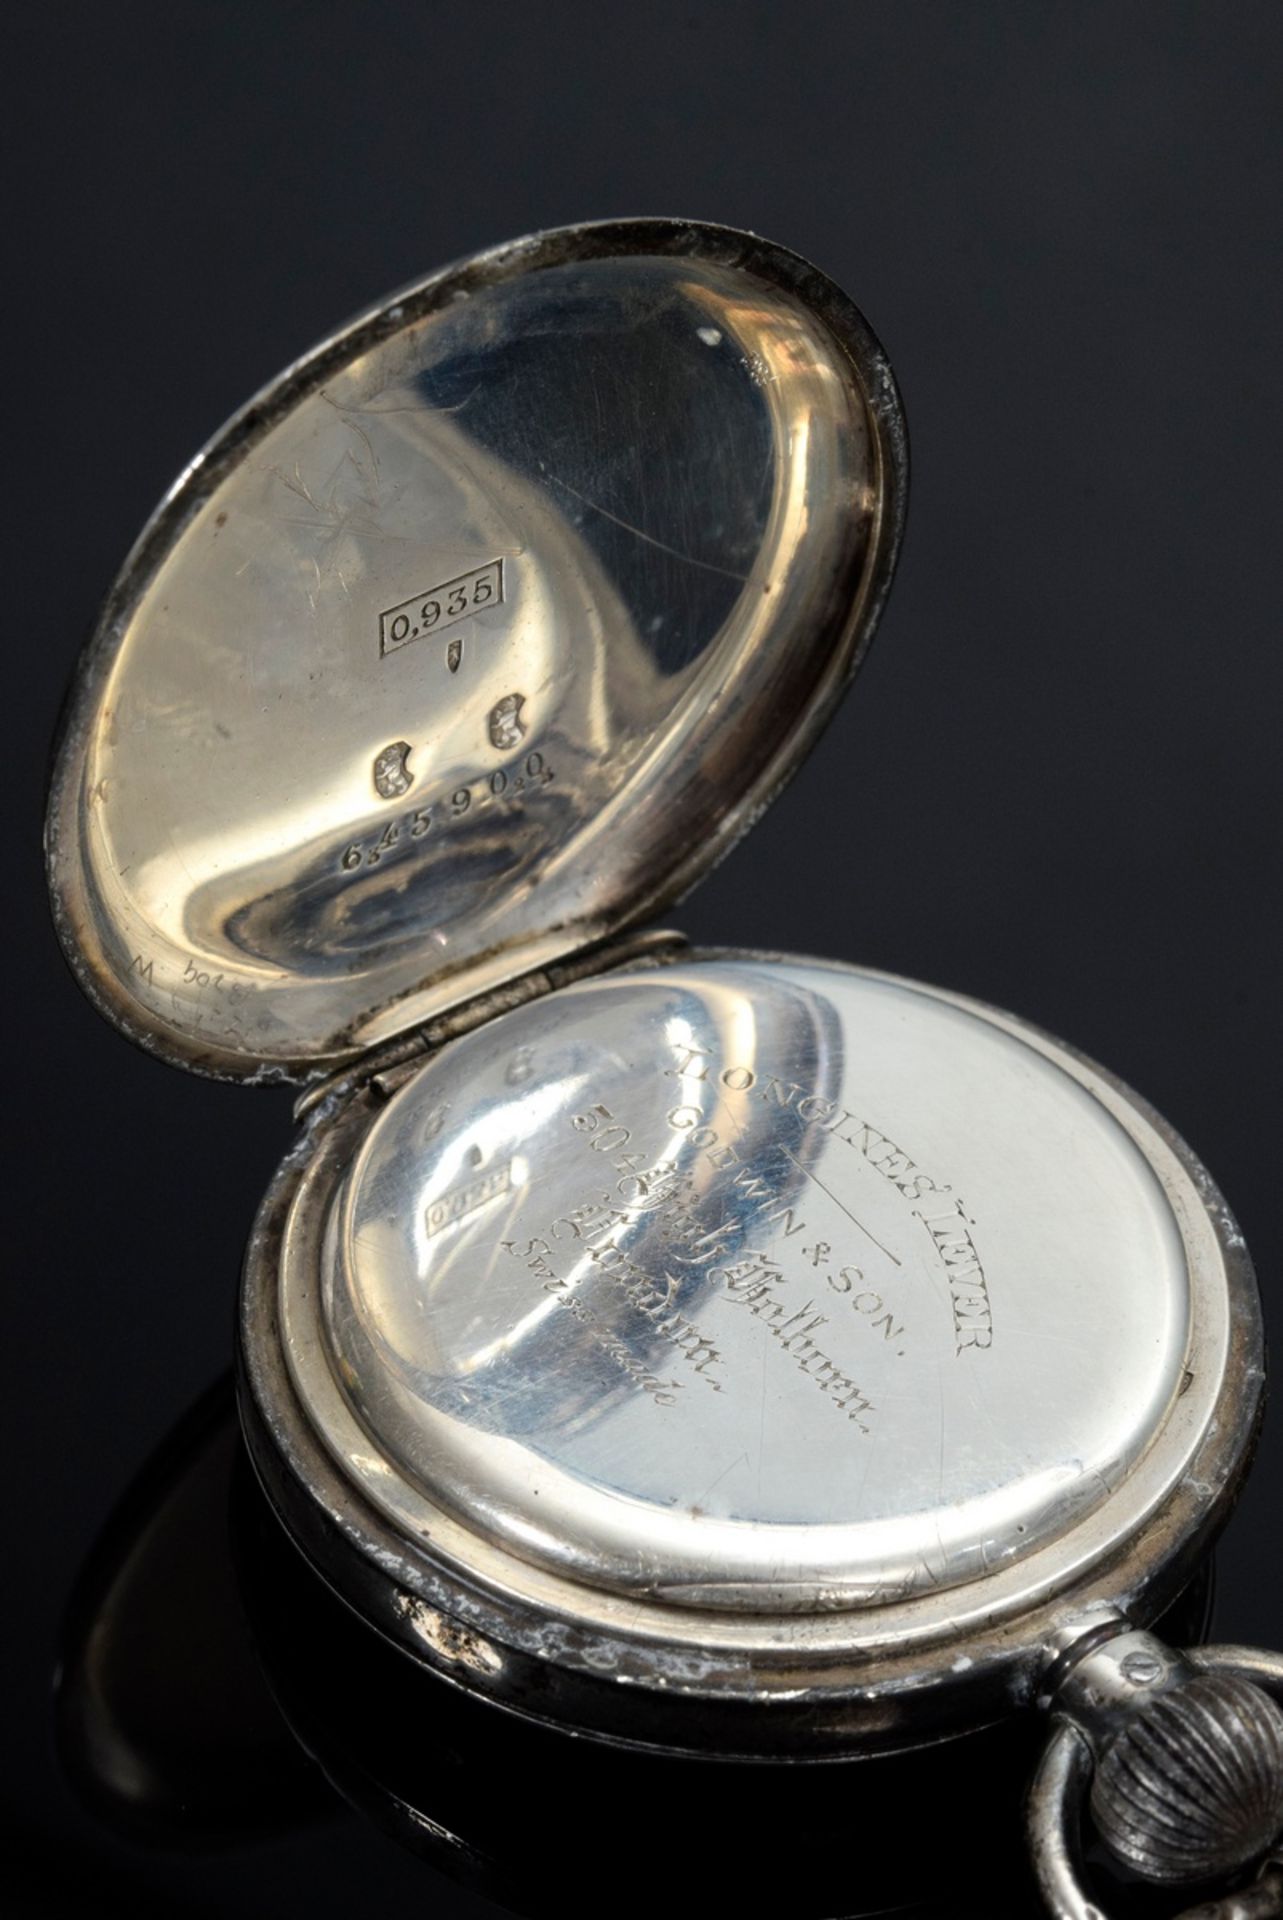 2 Diverse Taschenuhren mit römischen Ziffern: Longines Lever, Silber 935 an geschwärzter Stahlkette - Bild 13 aus 15